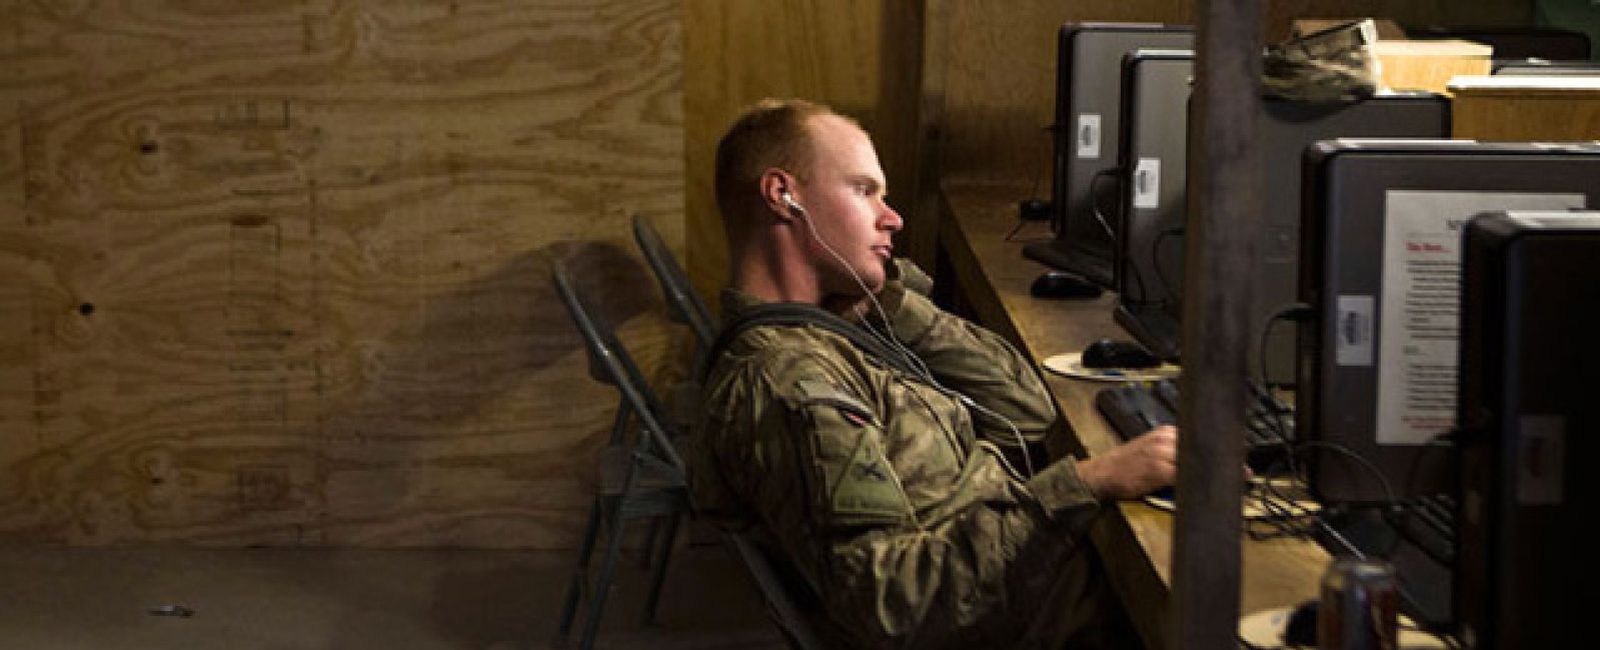 Foto: La OTAN señala a los 'hackers' como blancos legítimos en un conflicto